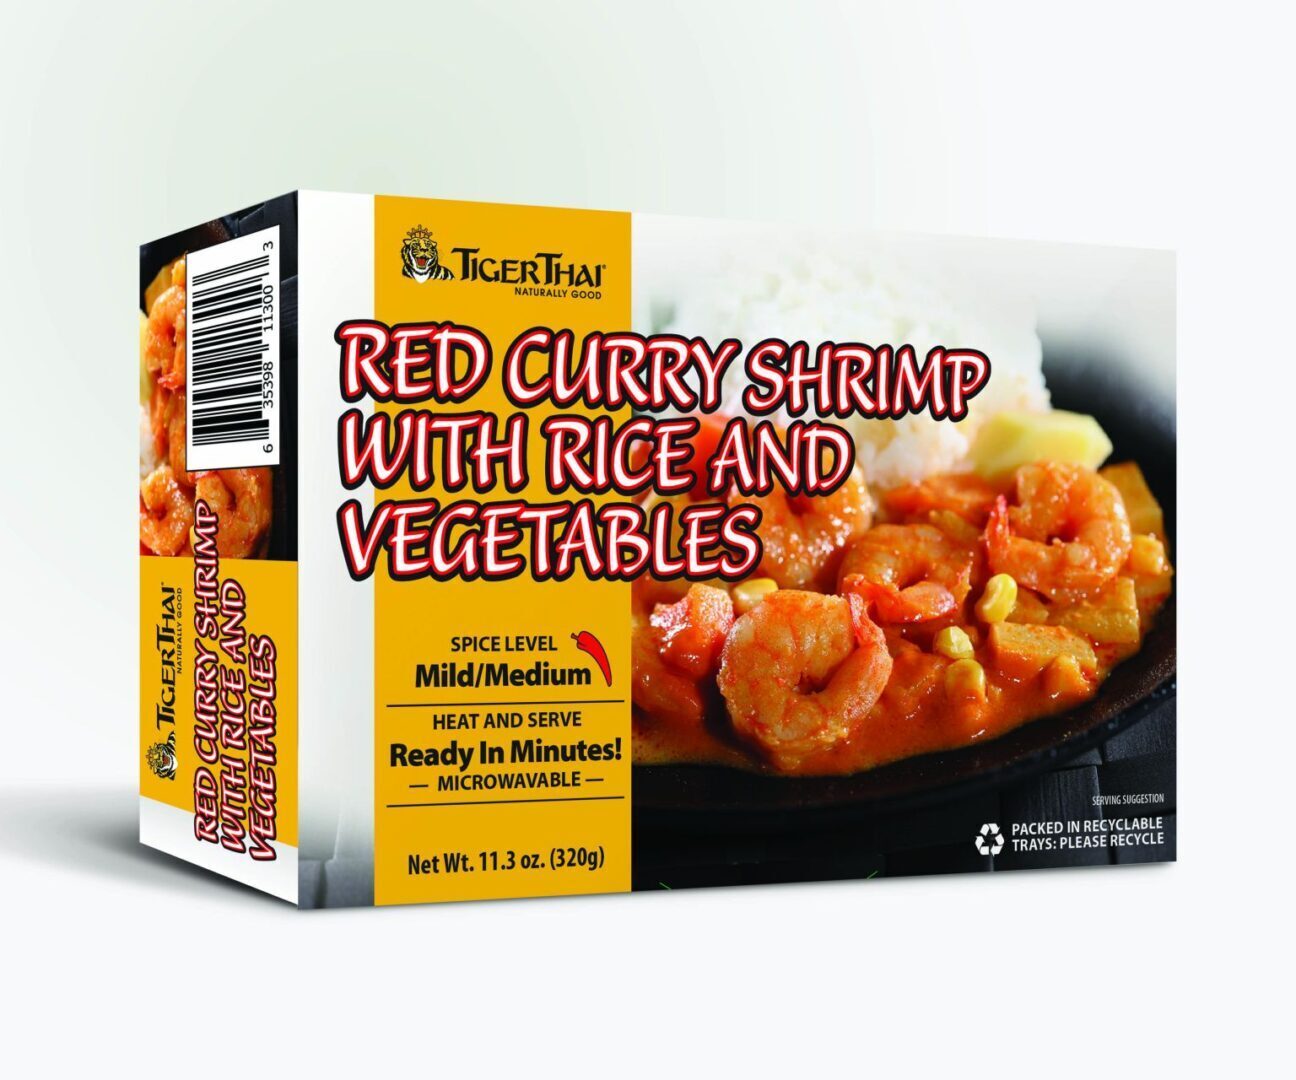 Red curry shrimp